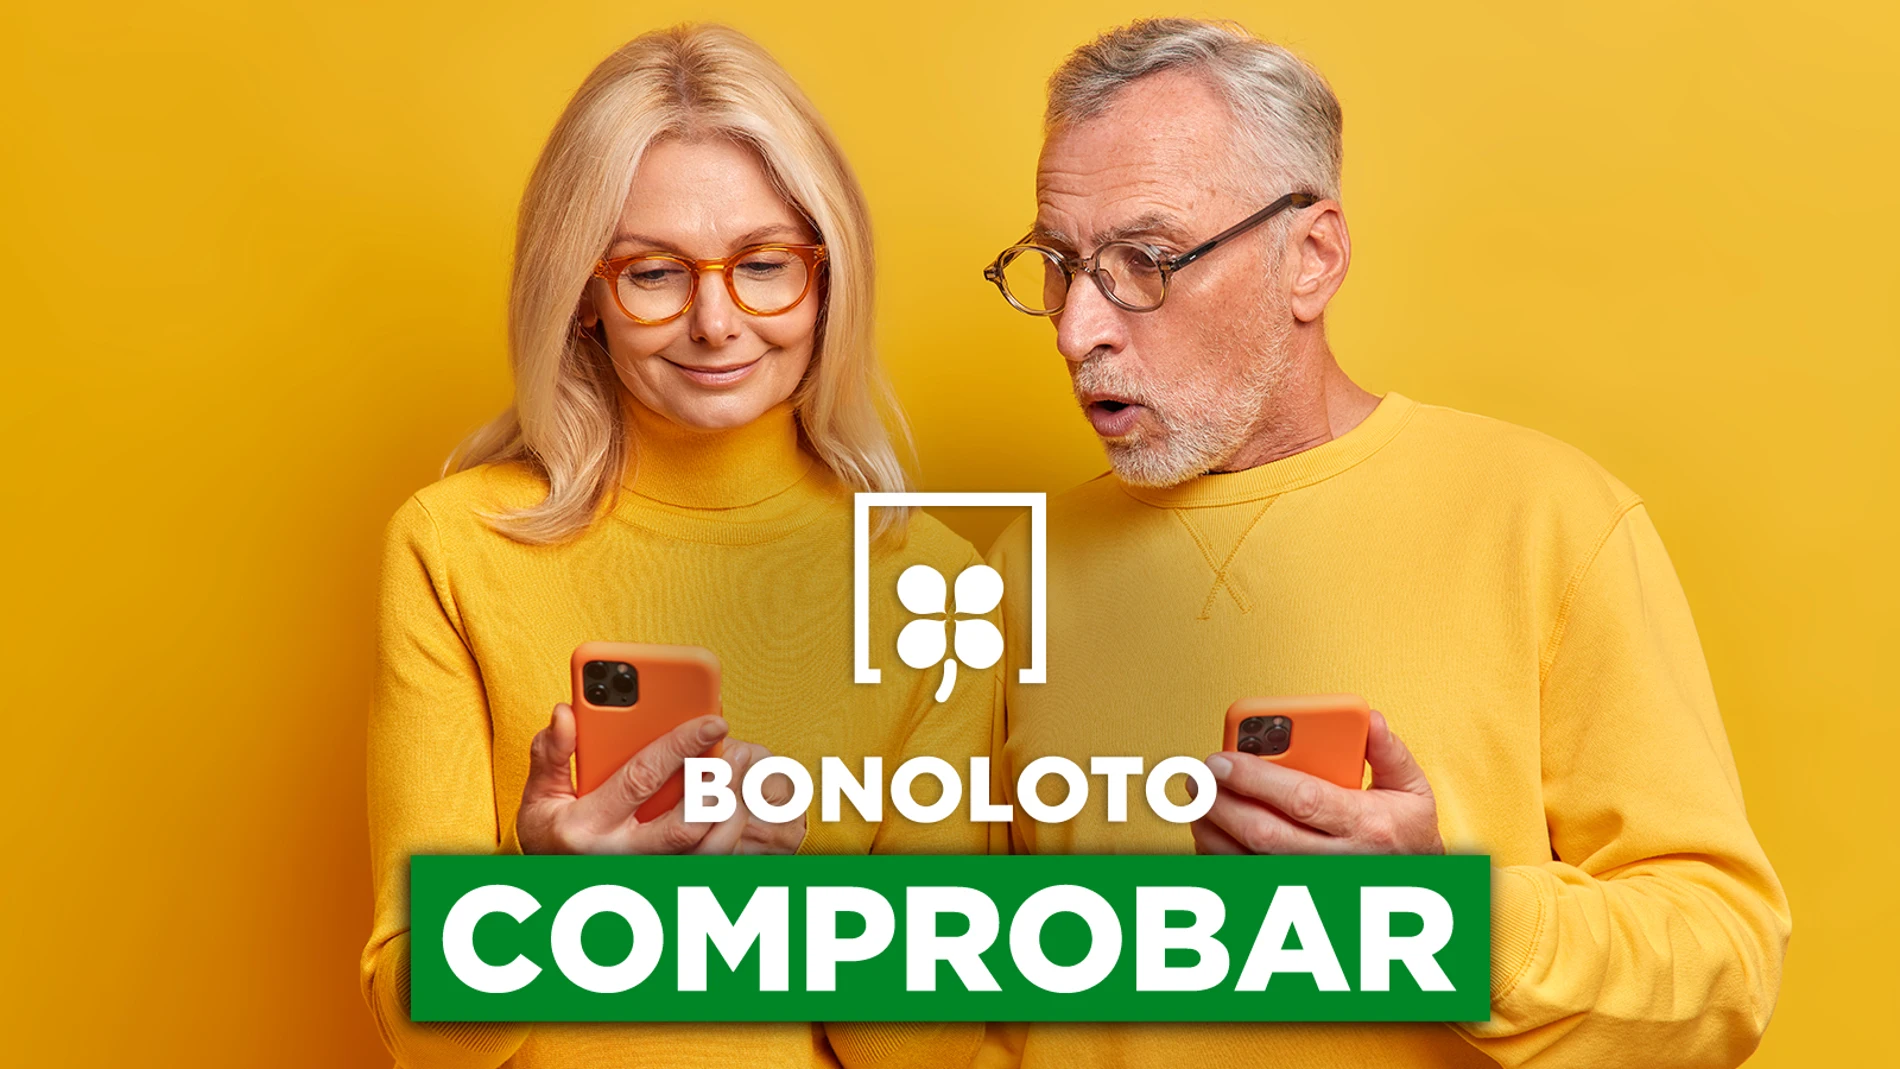 Bonoloto: comprobar hoy, viernes 6 de mayo de 2022